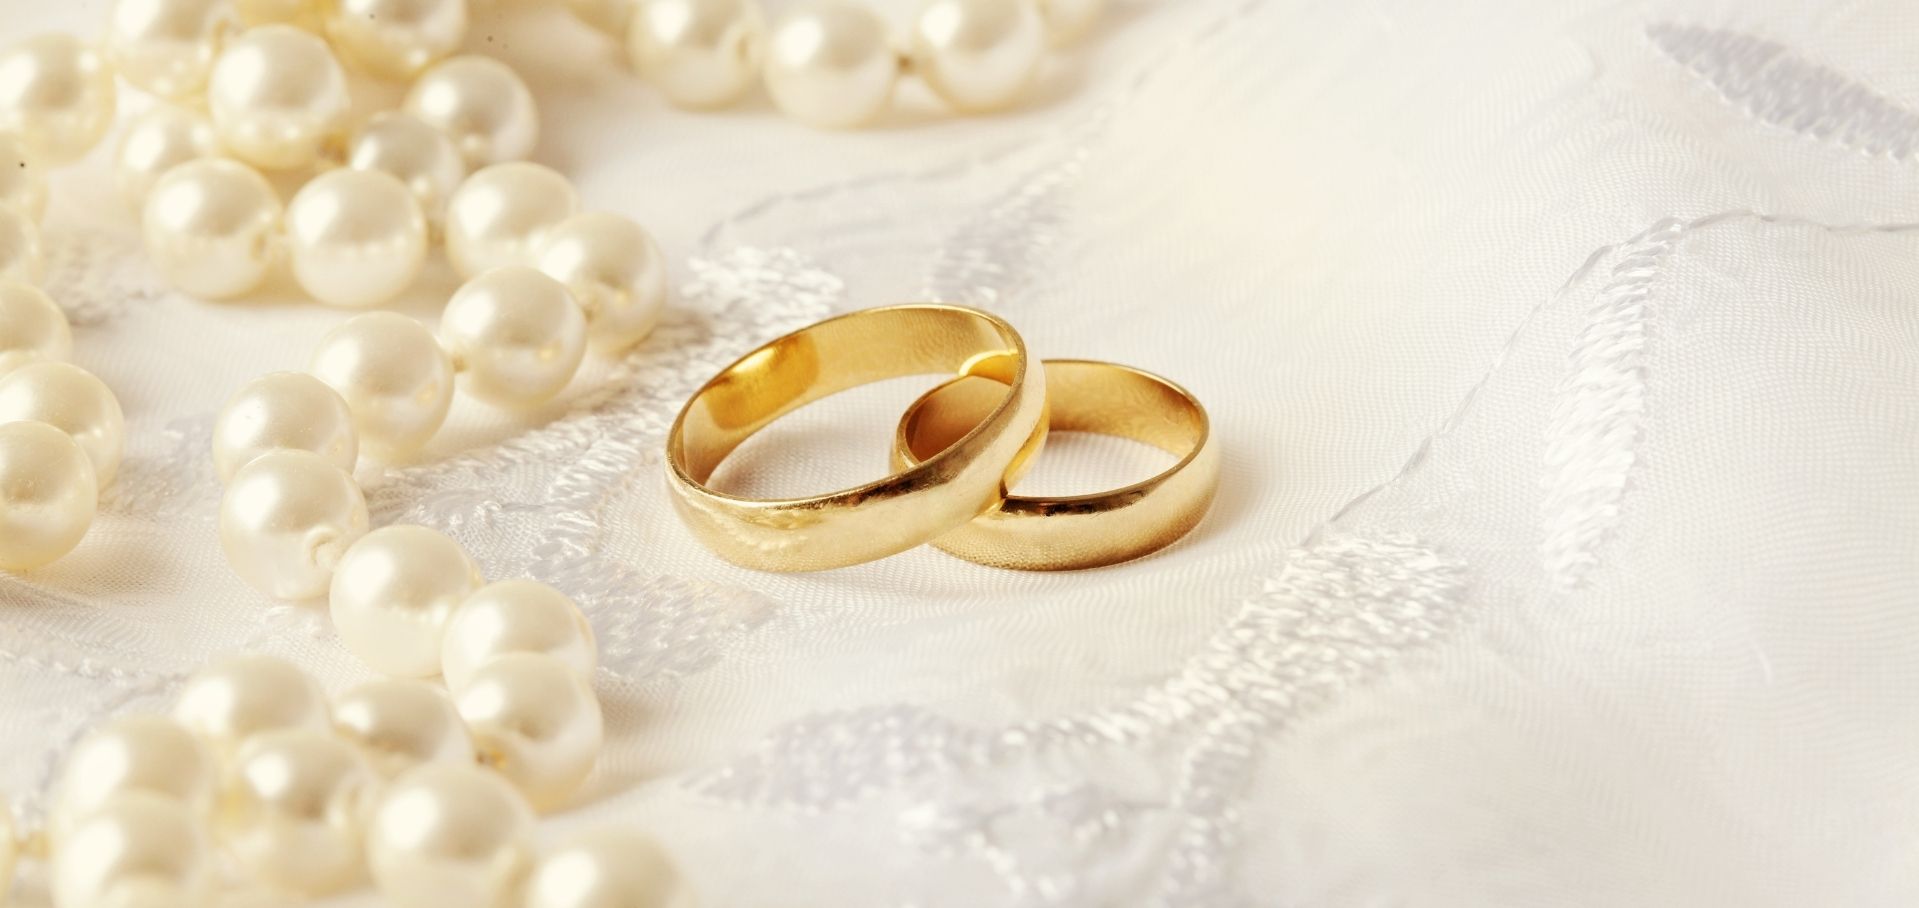 5 Unique Men's Wedding Bands & Engagement Rings